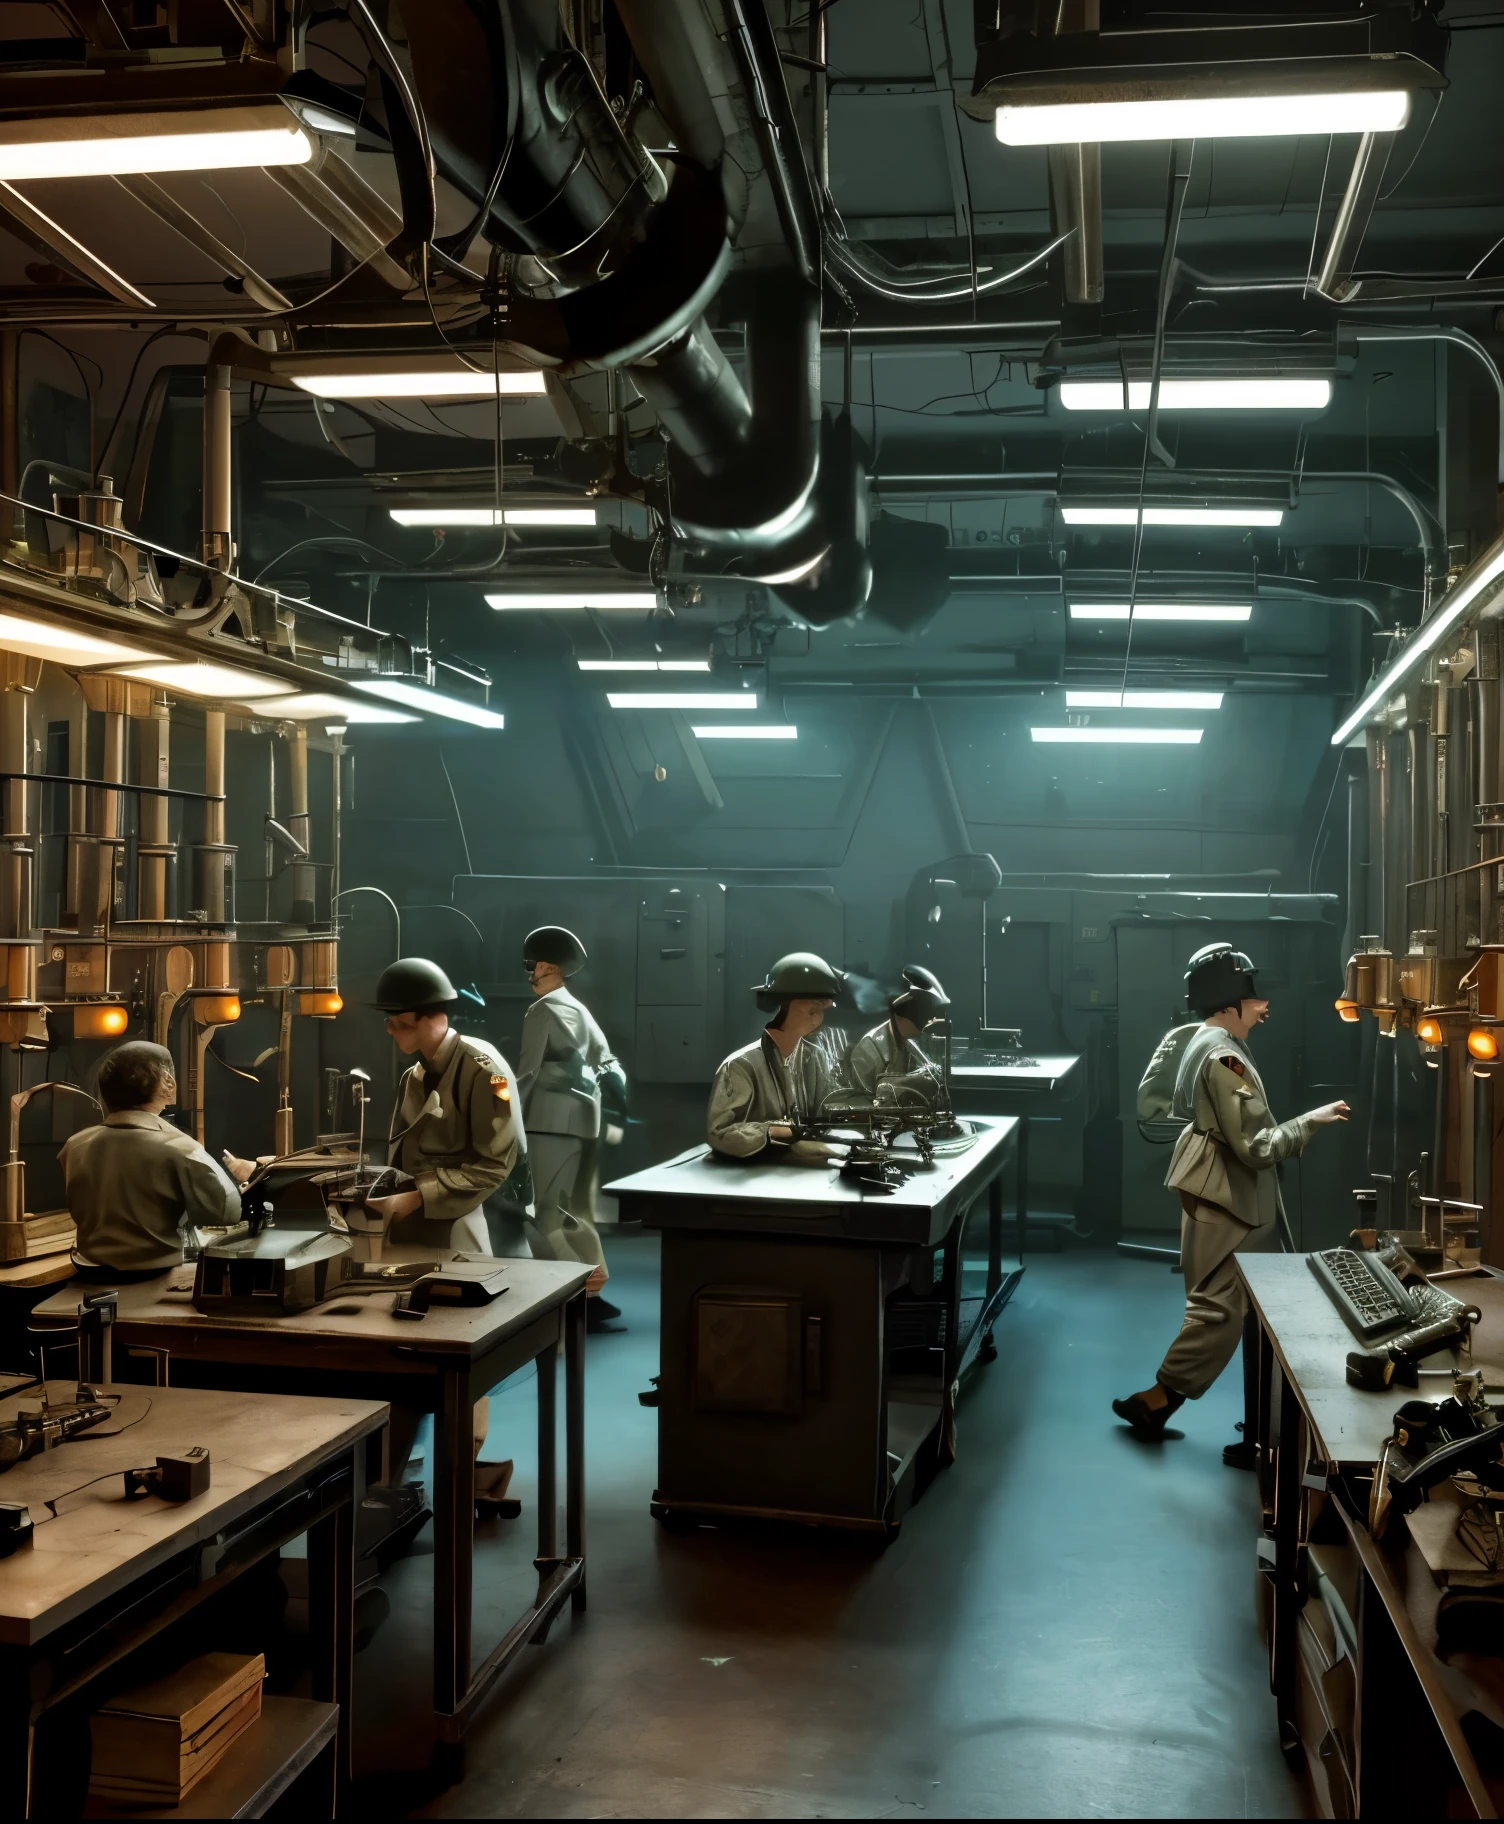  第二次世界大战复古科幻场景，大脑排列在实验室桌子上, 周围都是古老的科学设备和闪烁的灯光